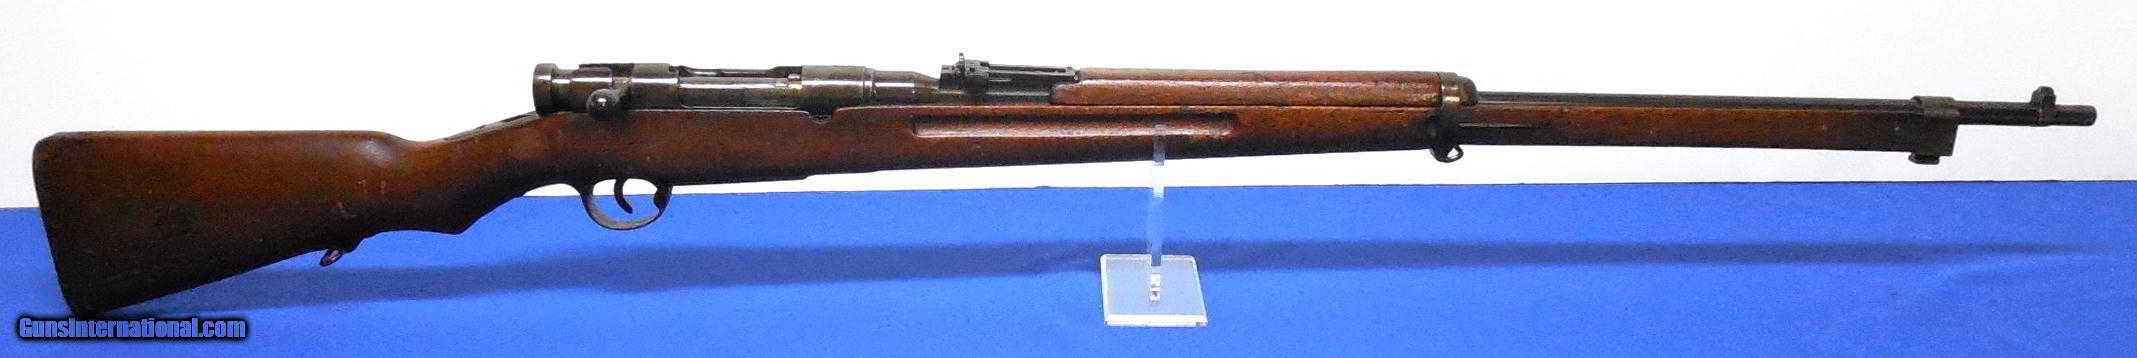 Тип 35 винтовки - type 35 rifle - qwe.wiki